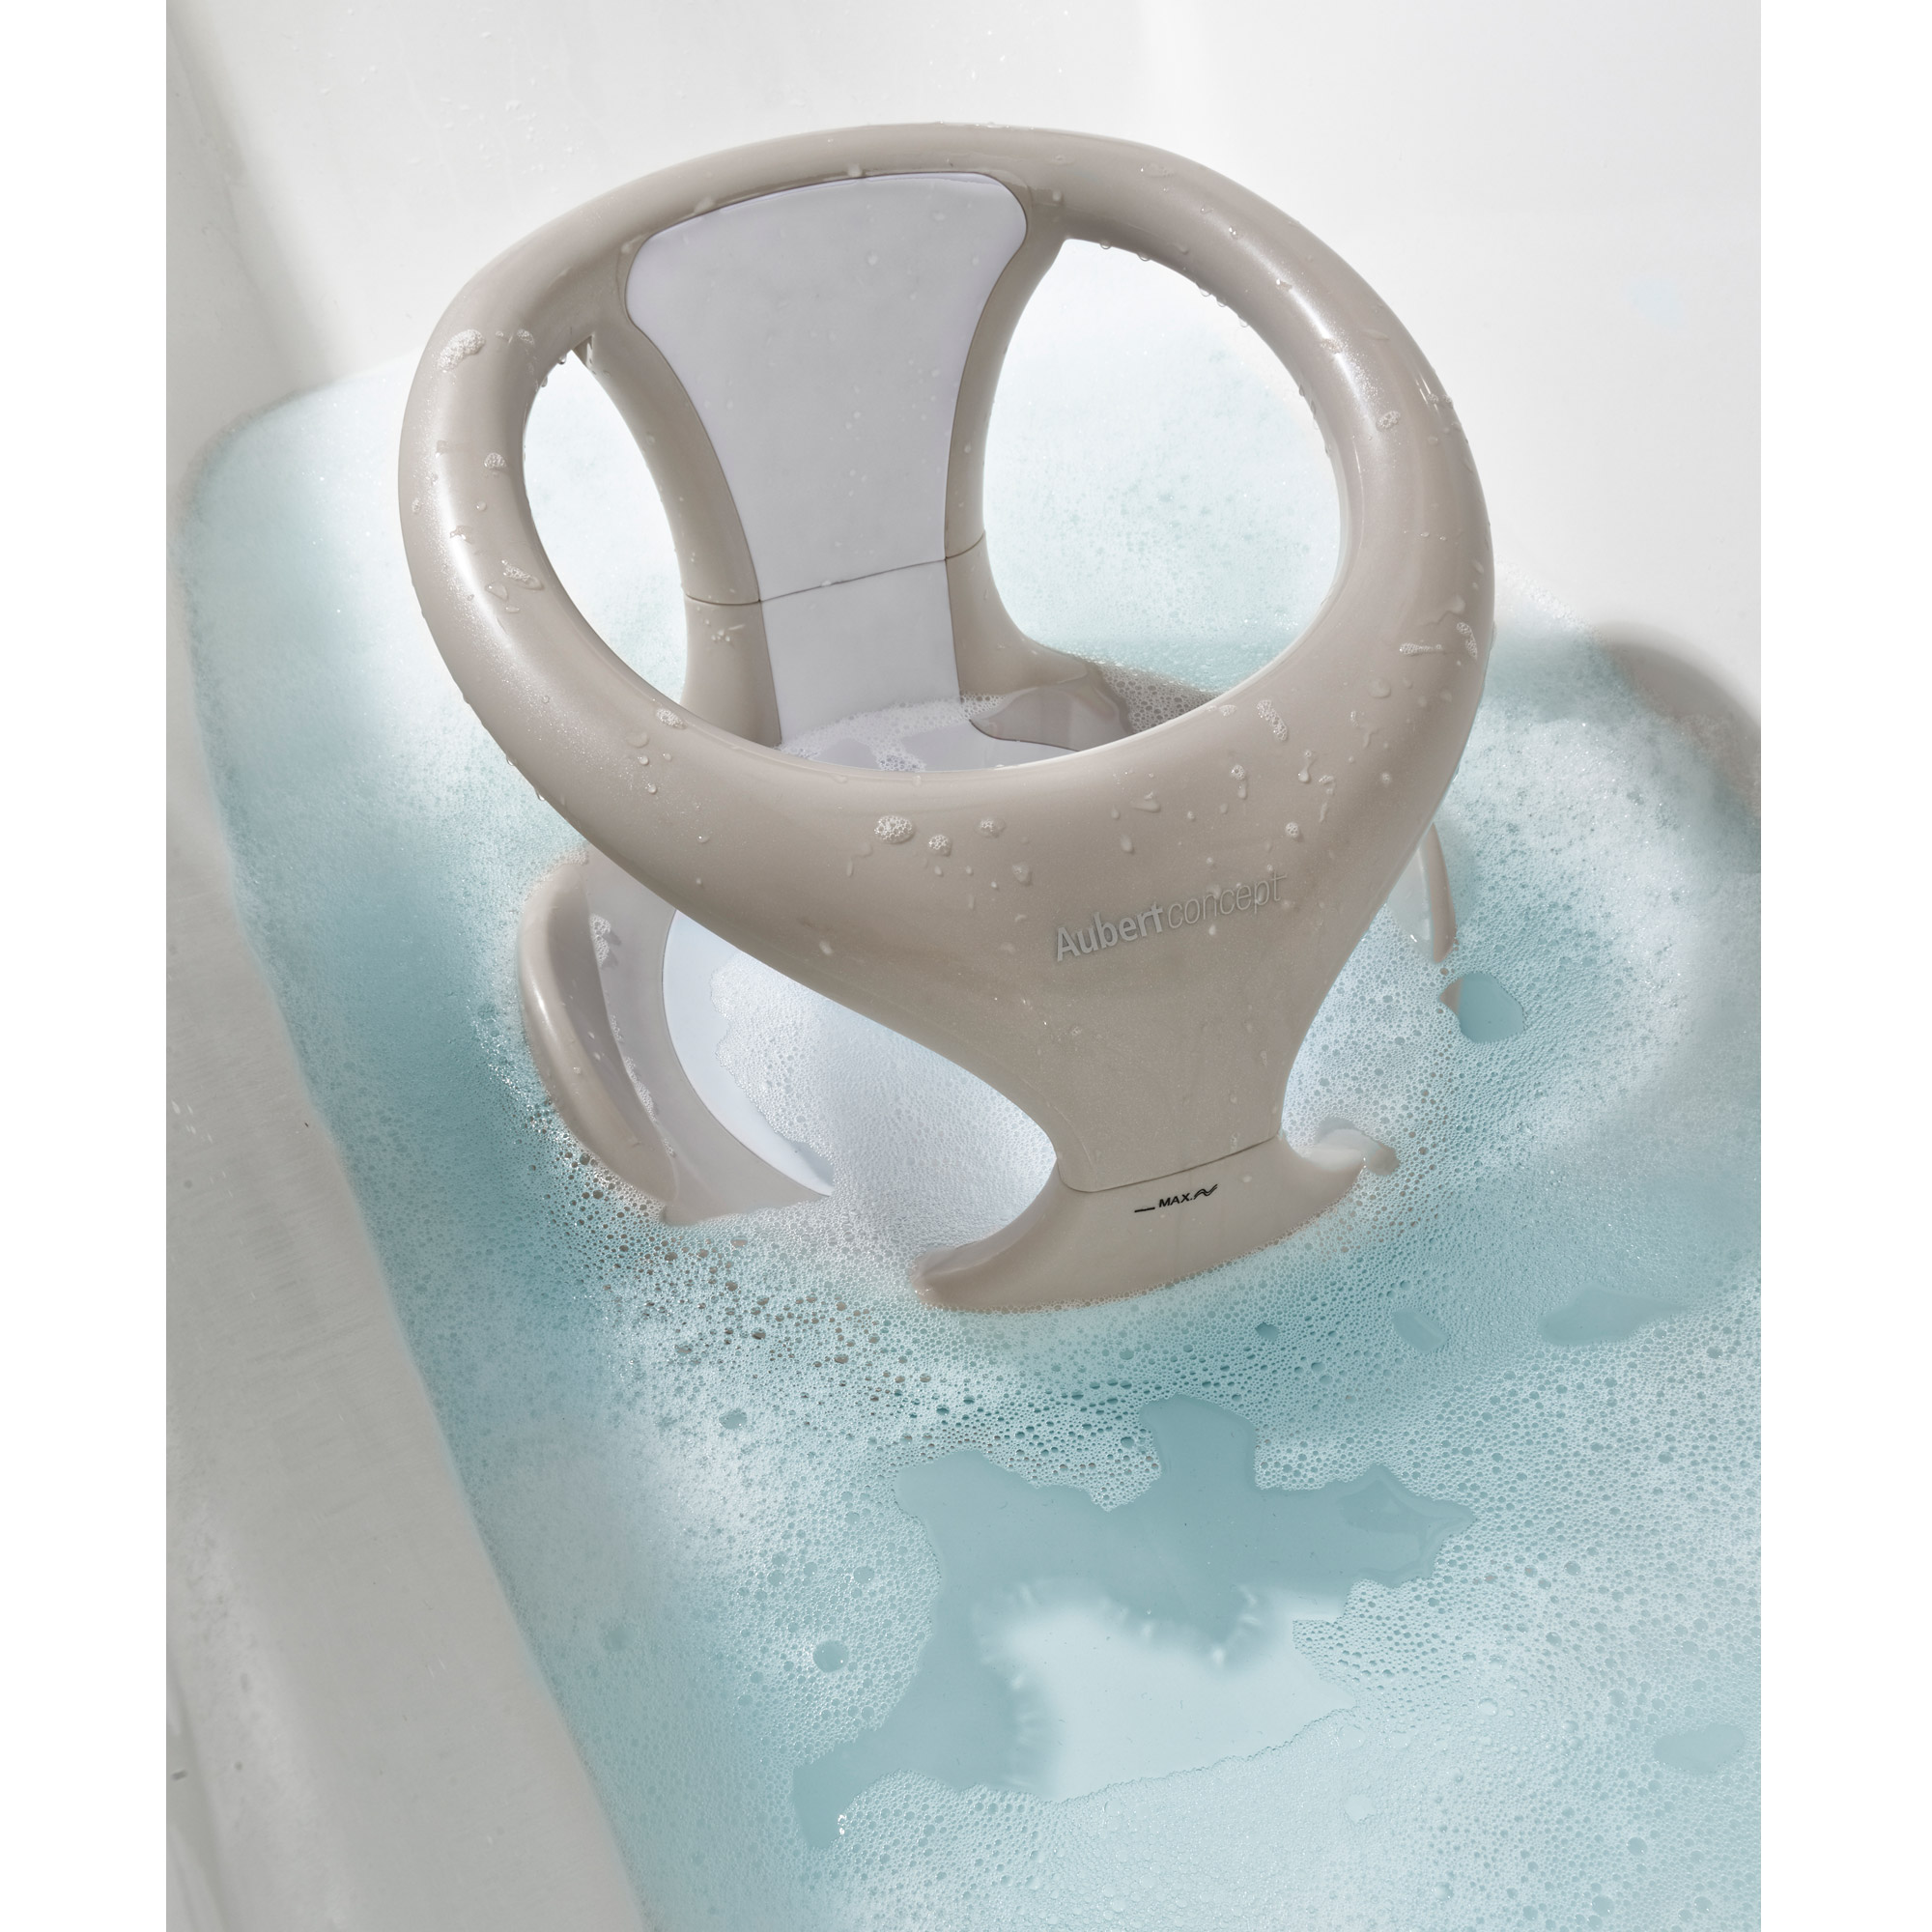 Anneau de bain Glacier de Aubert concept, Fauteuils de bain : Aubert